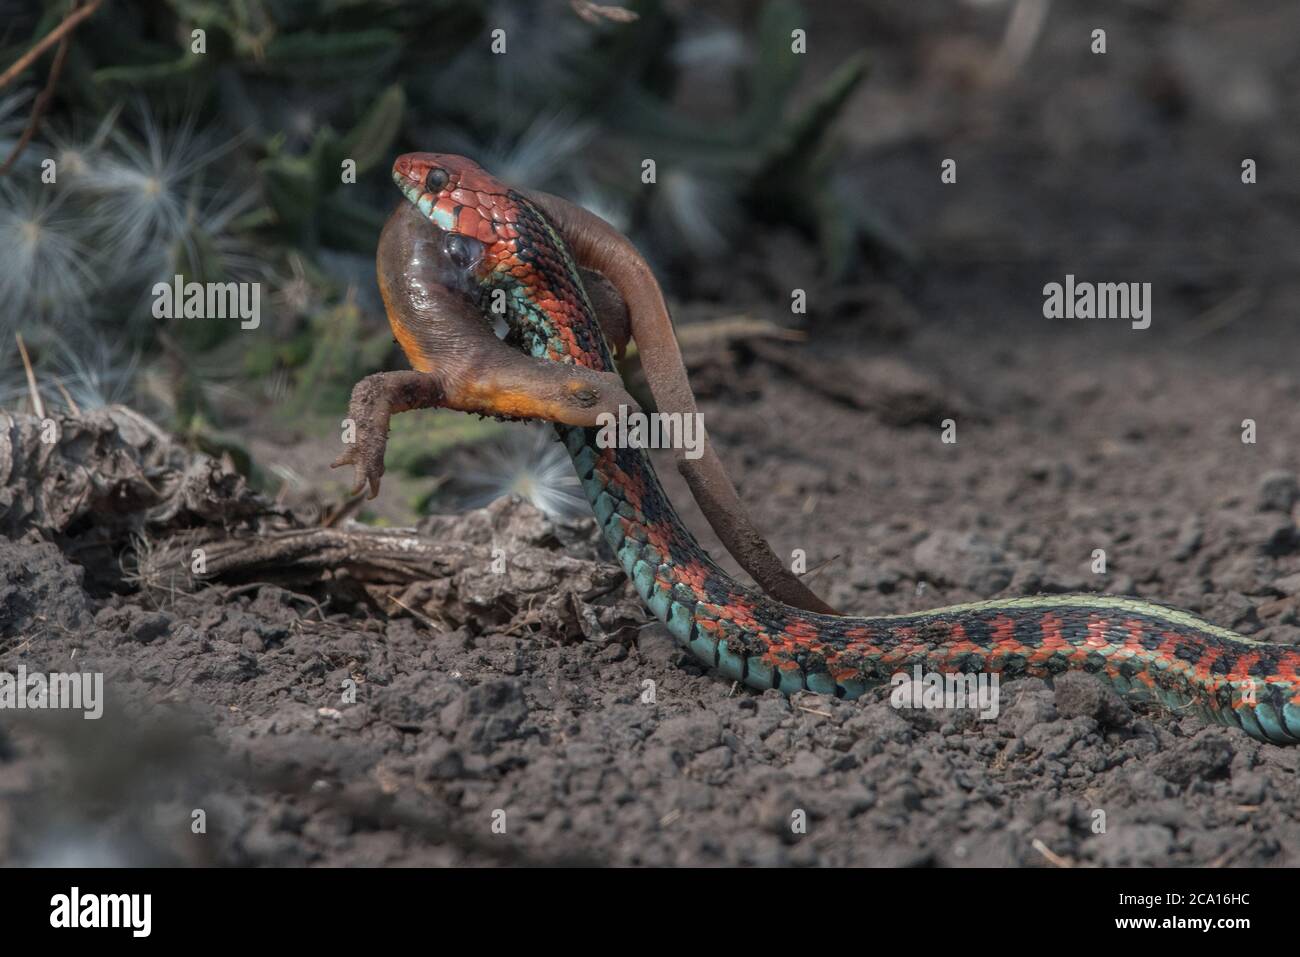 Una serpiente de cola roja de california (Thamnophis sirtalis infernalis) comiendo un newt (Taricha torosa), 1 de los pocos depredadores que pueden manejar las toxinas del newt. Foto de stock